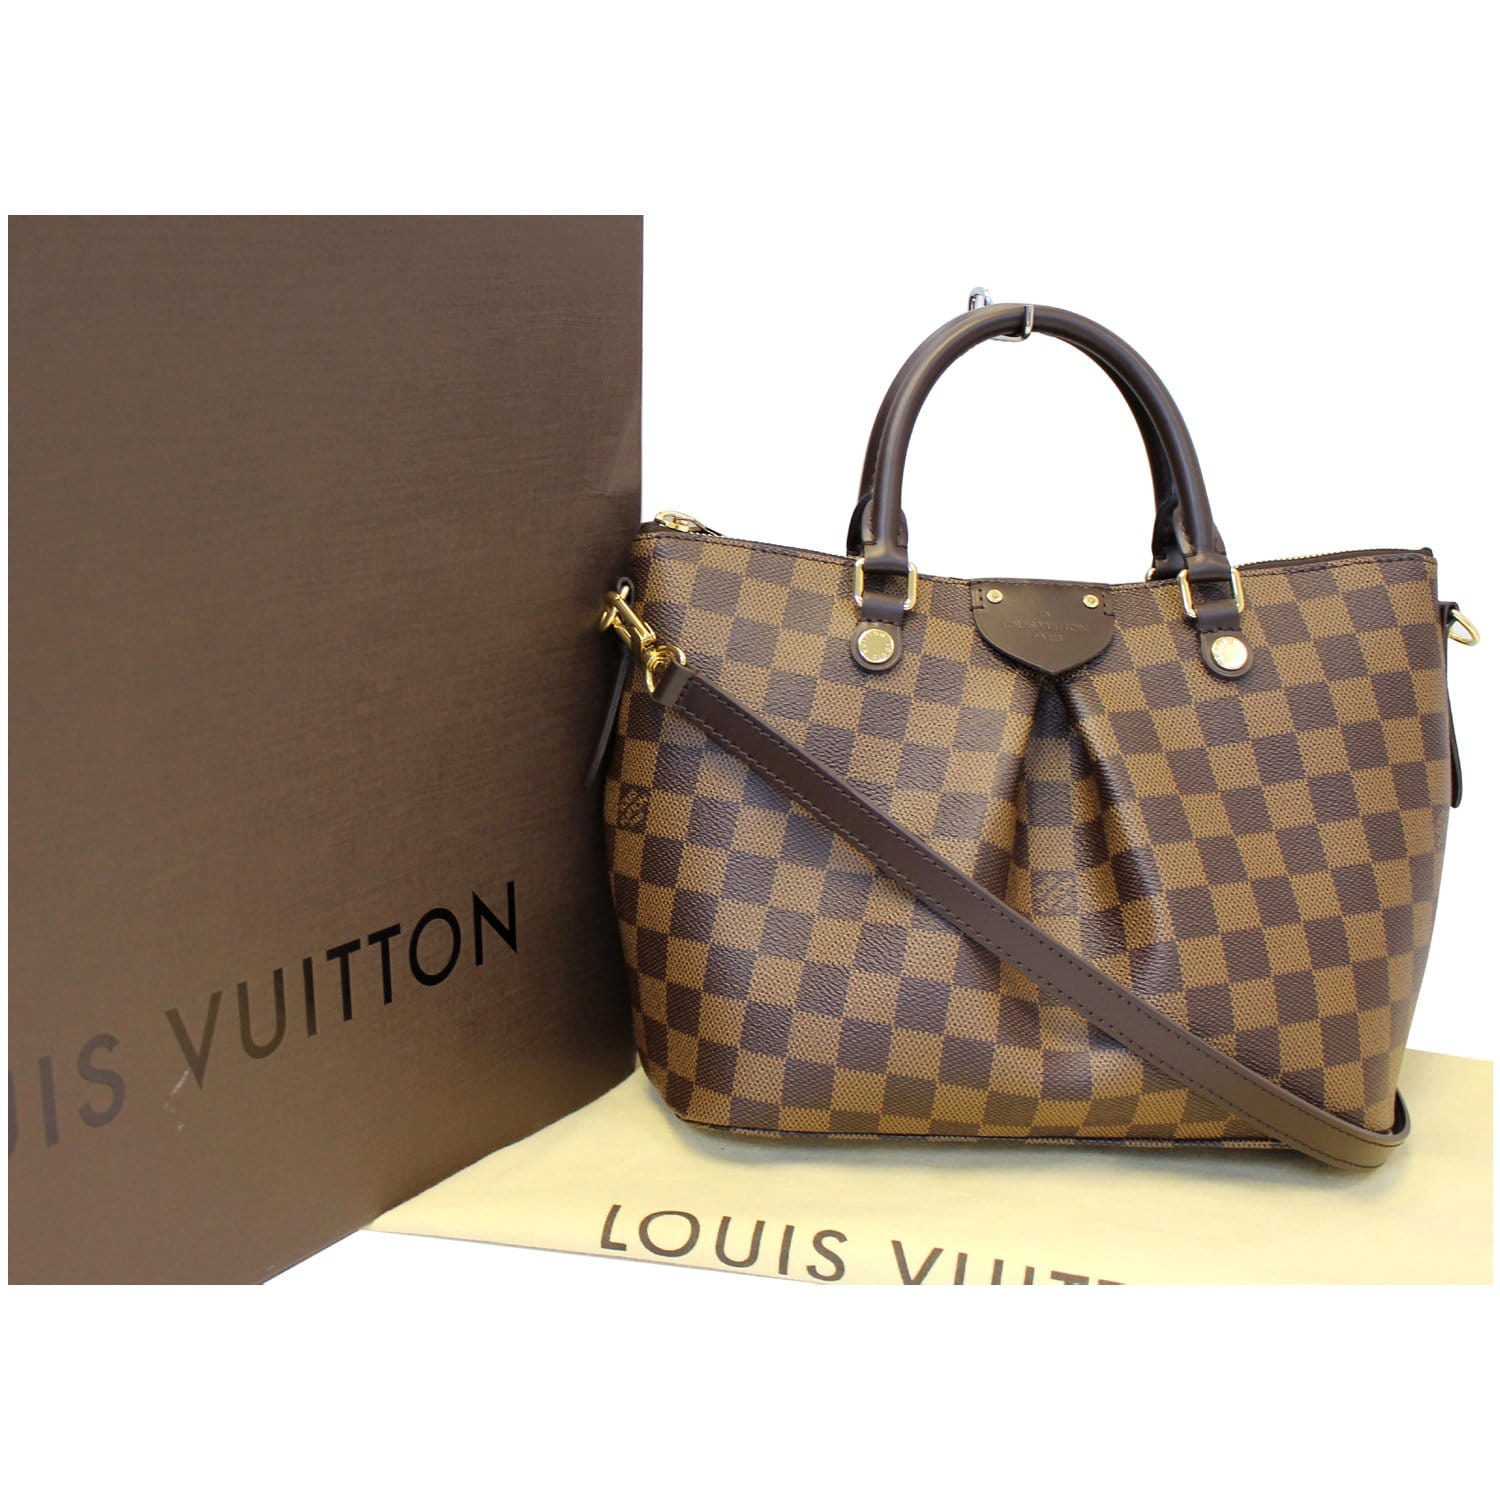 Louis Vuitton Siena PM – thankunext.us